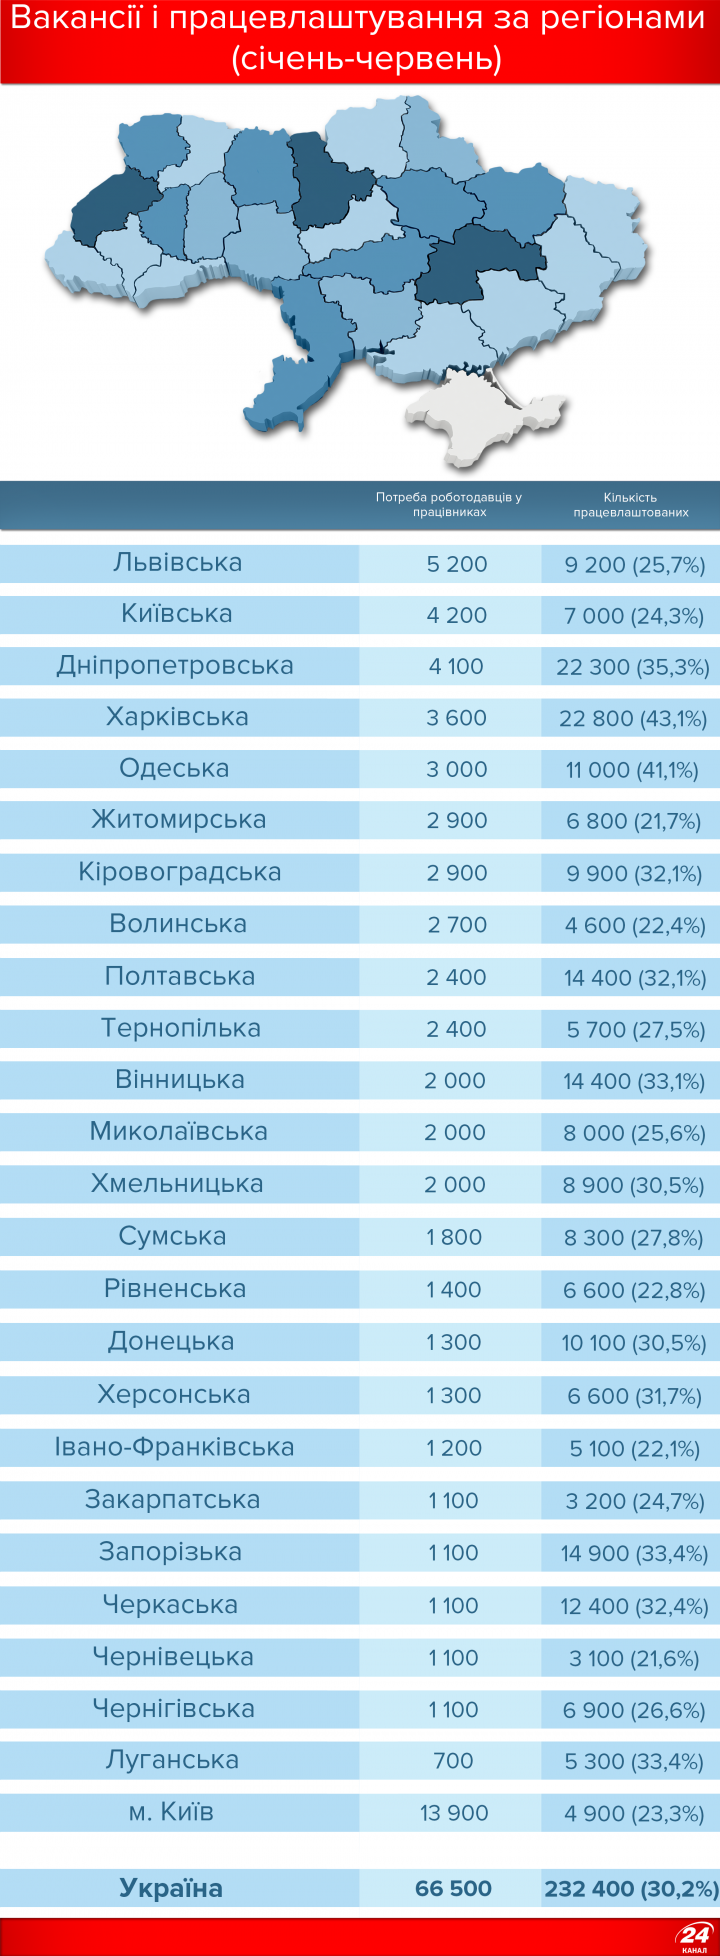 Безработица в Украине: размер пособия и где больше всего вакансий (инфографика)